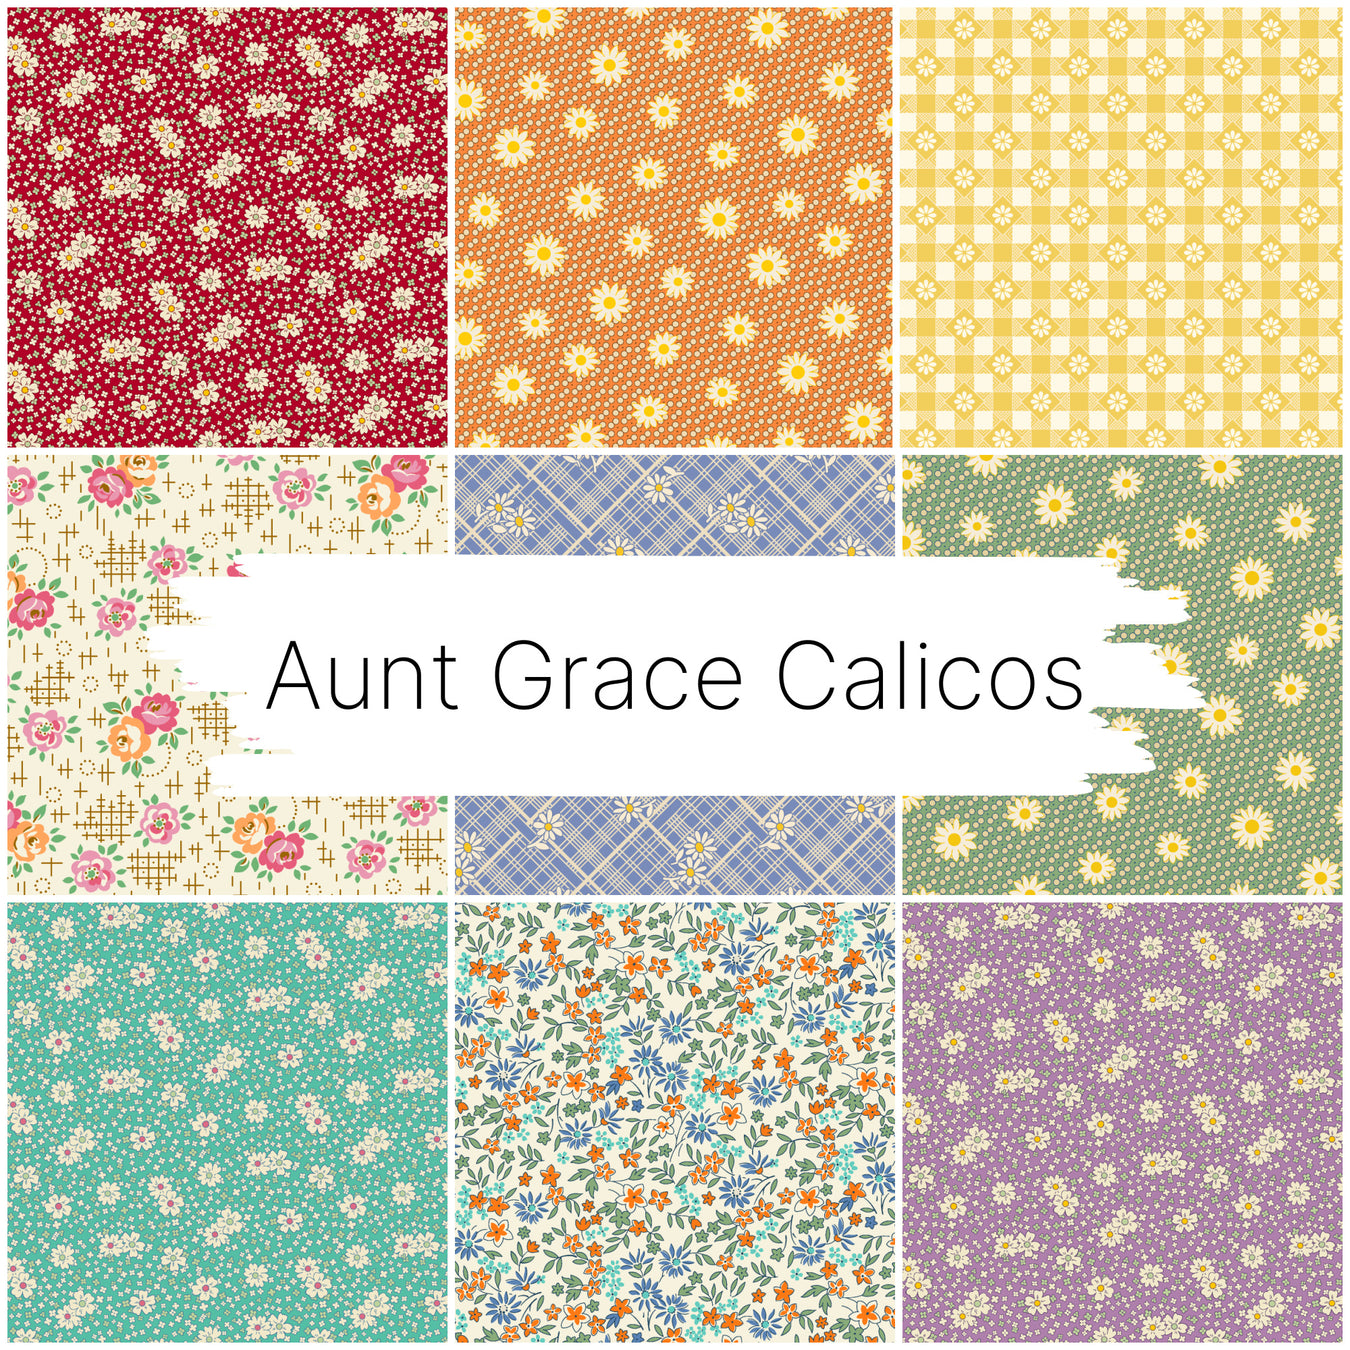 Aunt Grace Calicos